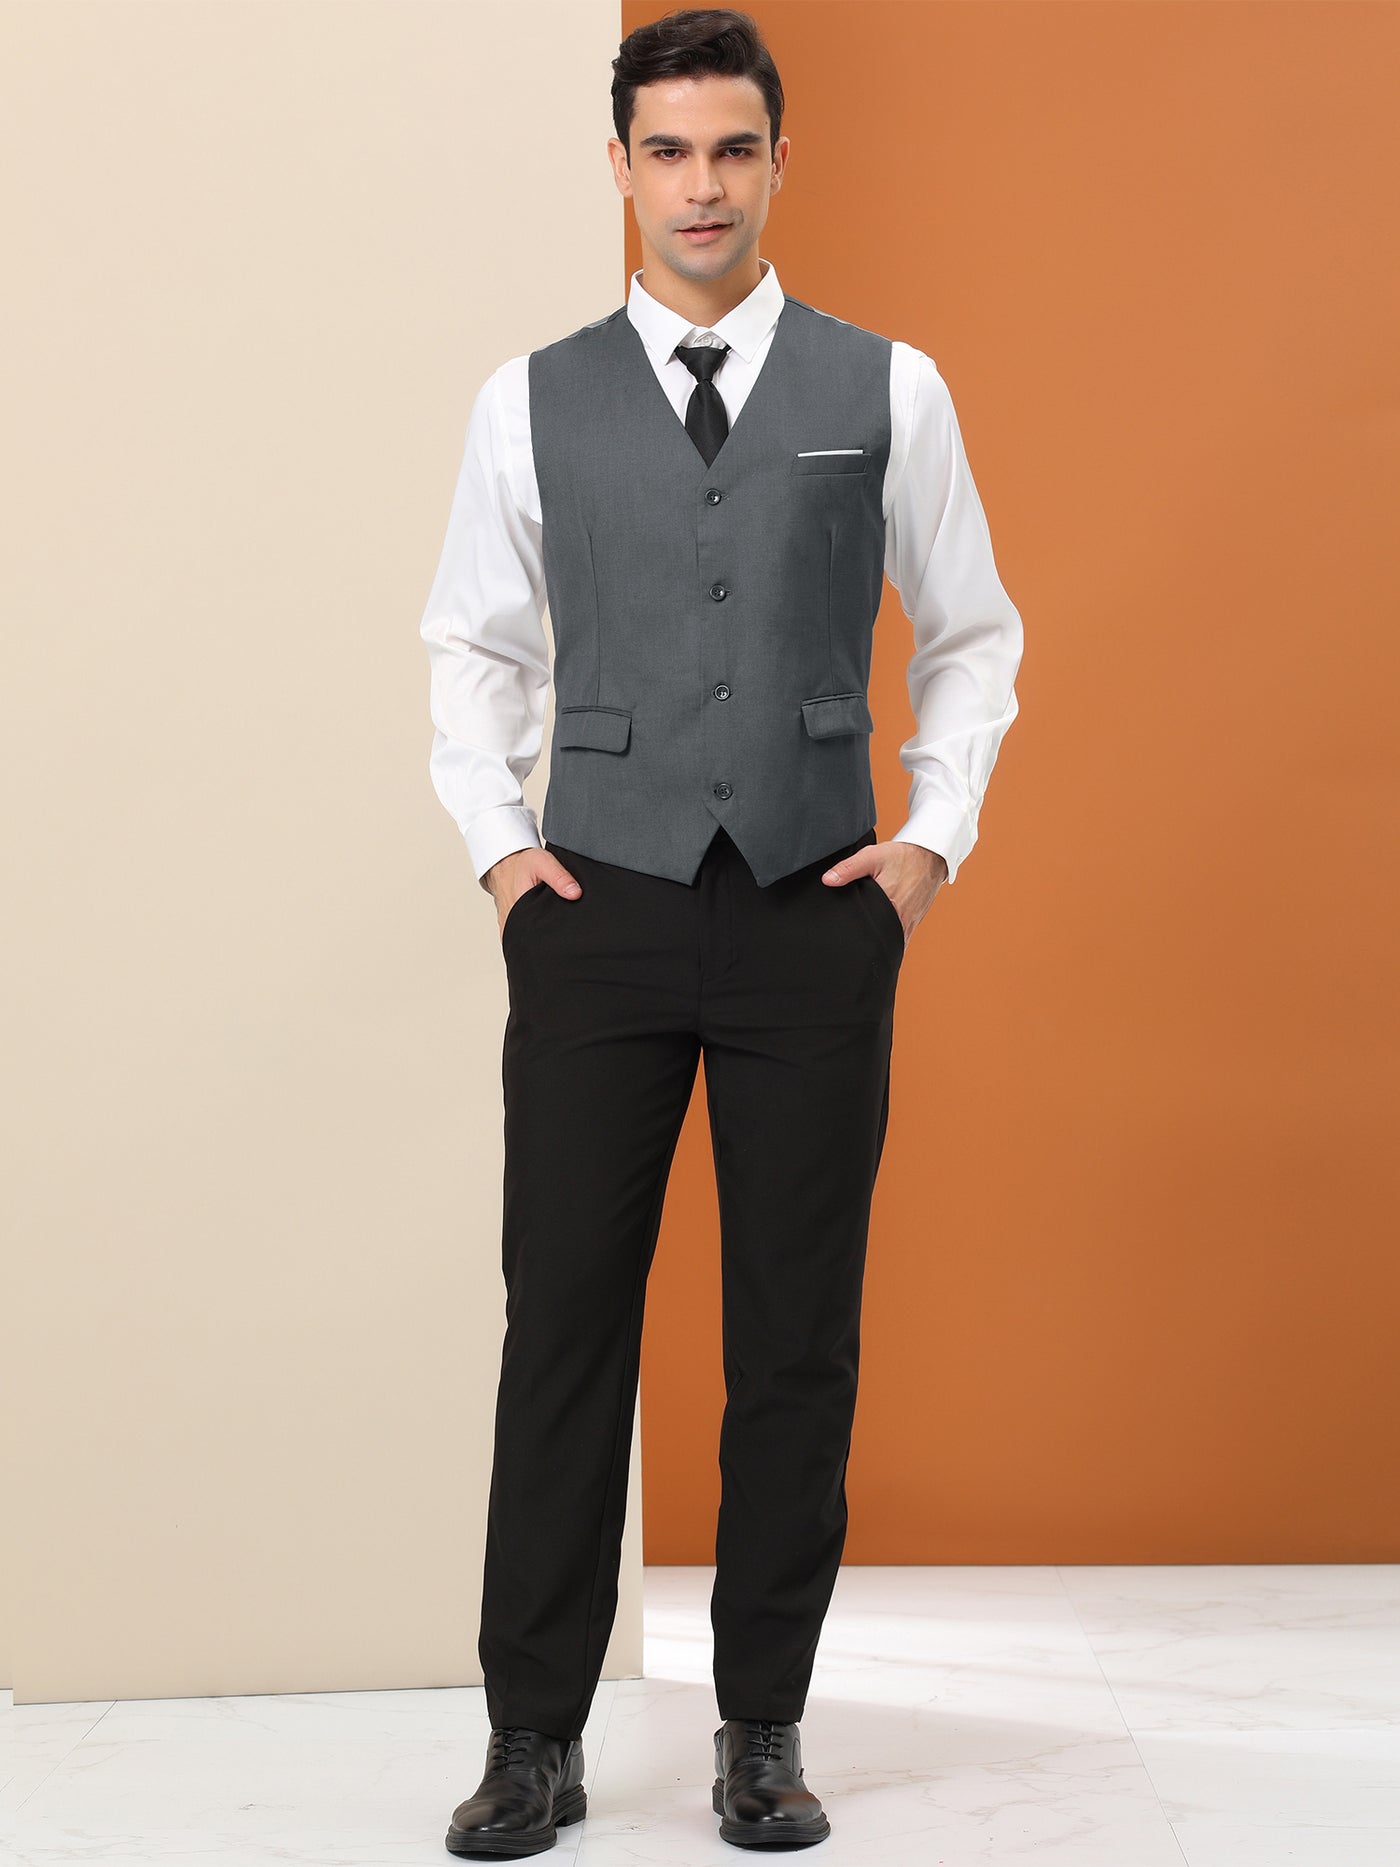 Bublédon Men's Dress Waistcoat Slim Fit Button Down Sleeveless Formal Suit Vest